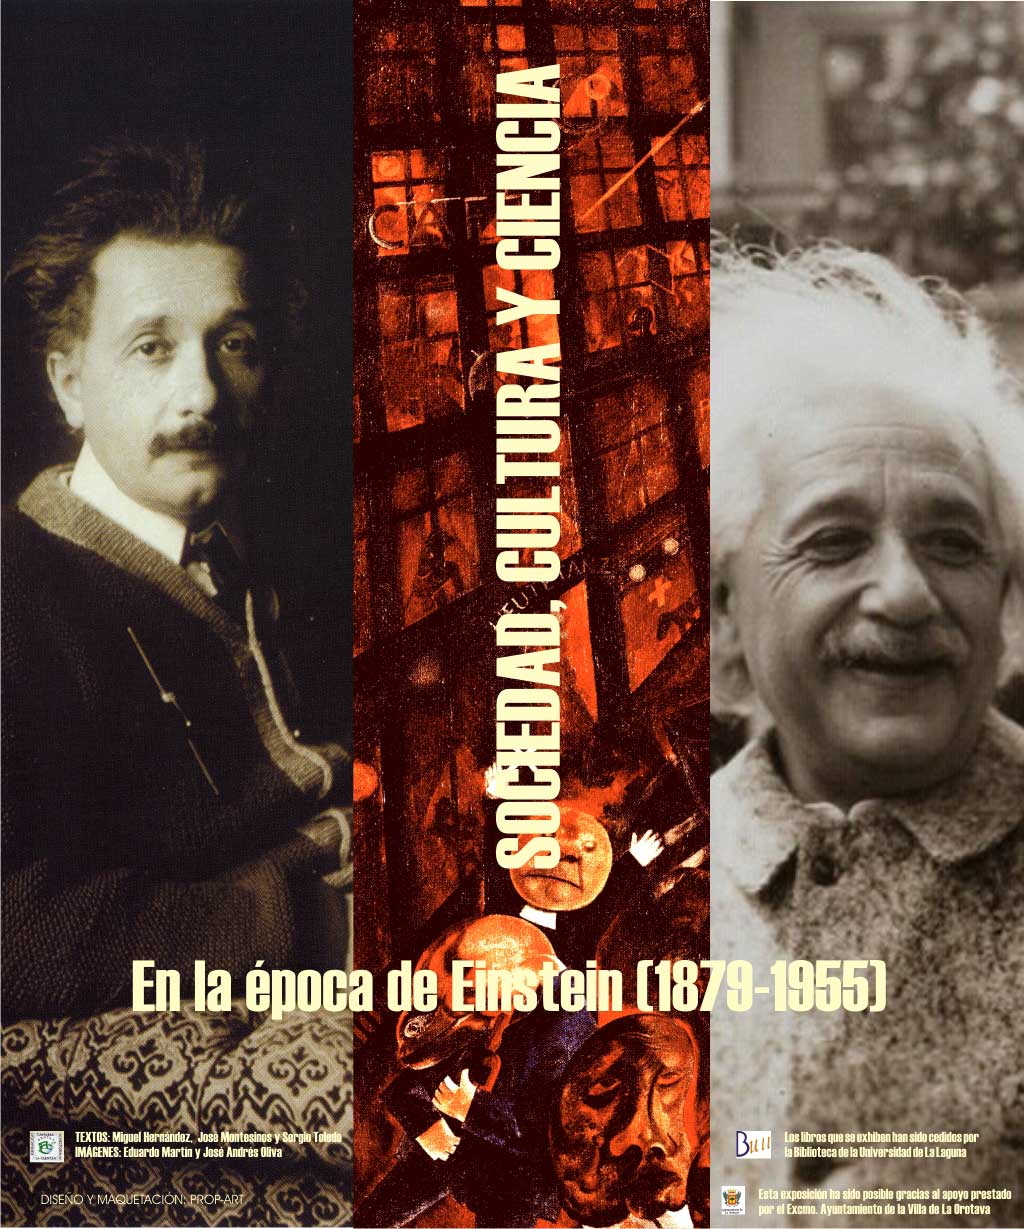 Panel de portada de la exposición sociedad, cultura y ciencia en la época de Einstein